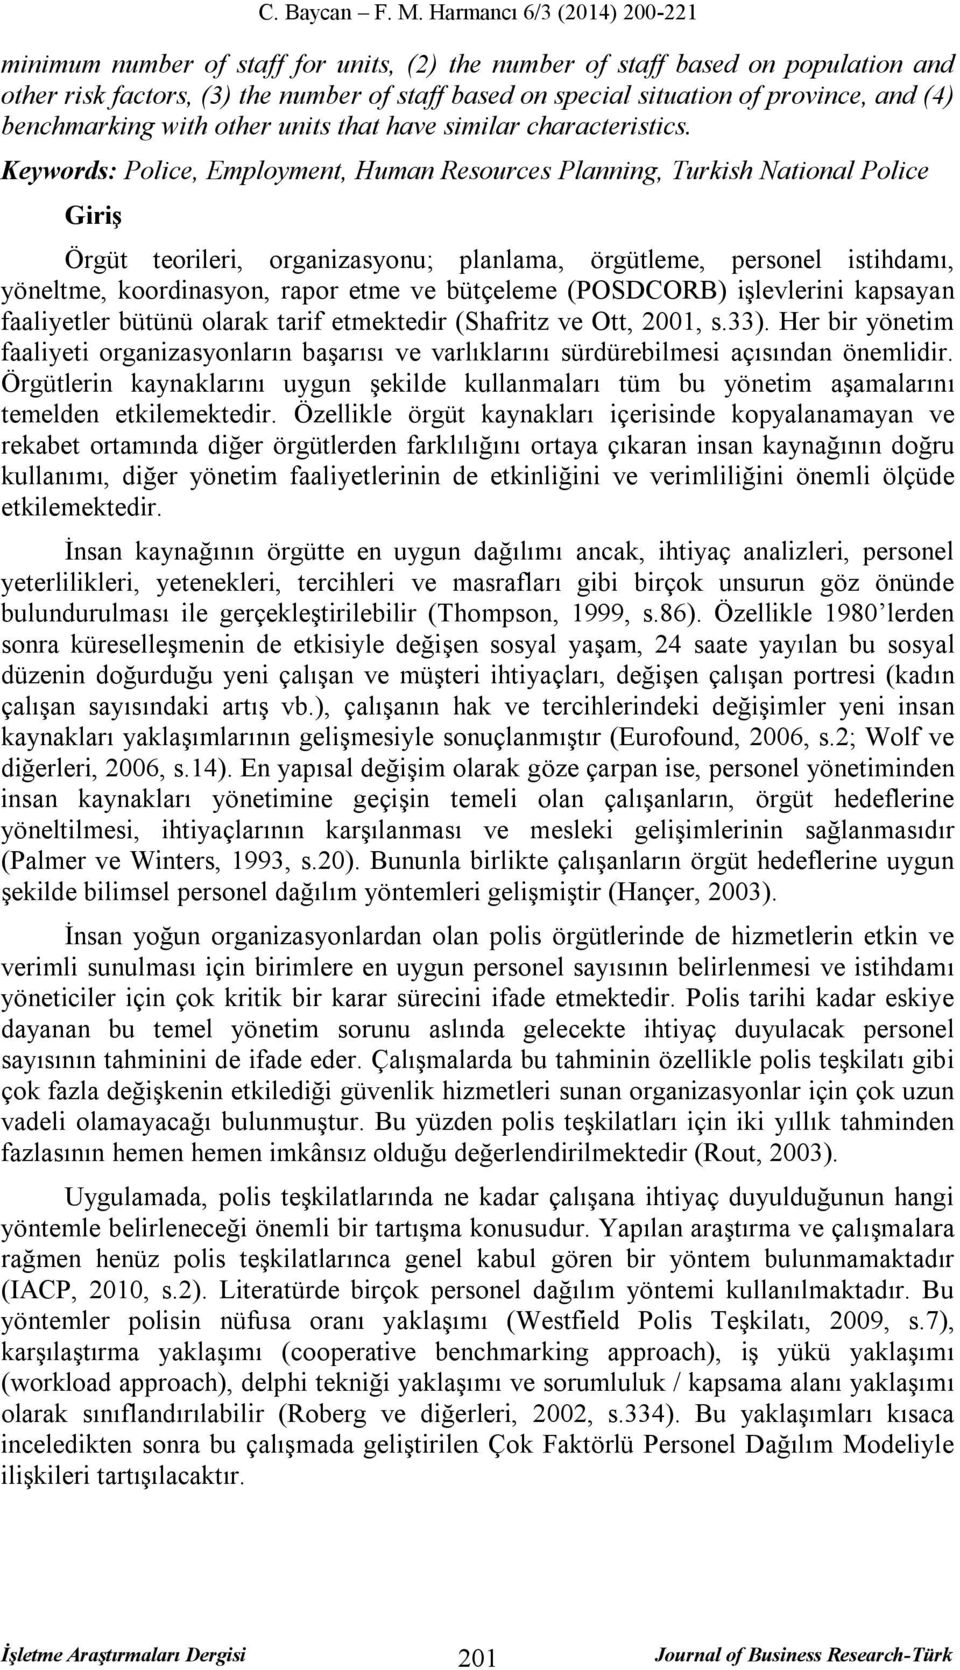 Keywords: Police, Employment, Human Resources Planning, Turkish National Police Giriş Örgüt teorileri, organizasyonu; planlama, örgütleme, personel istihdamı, yöneltme, koordinasyon, rapor etme ve